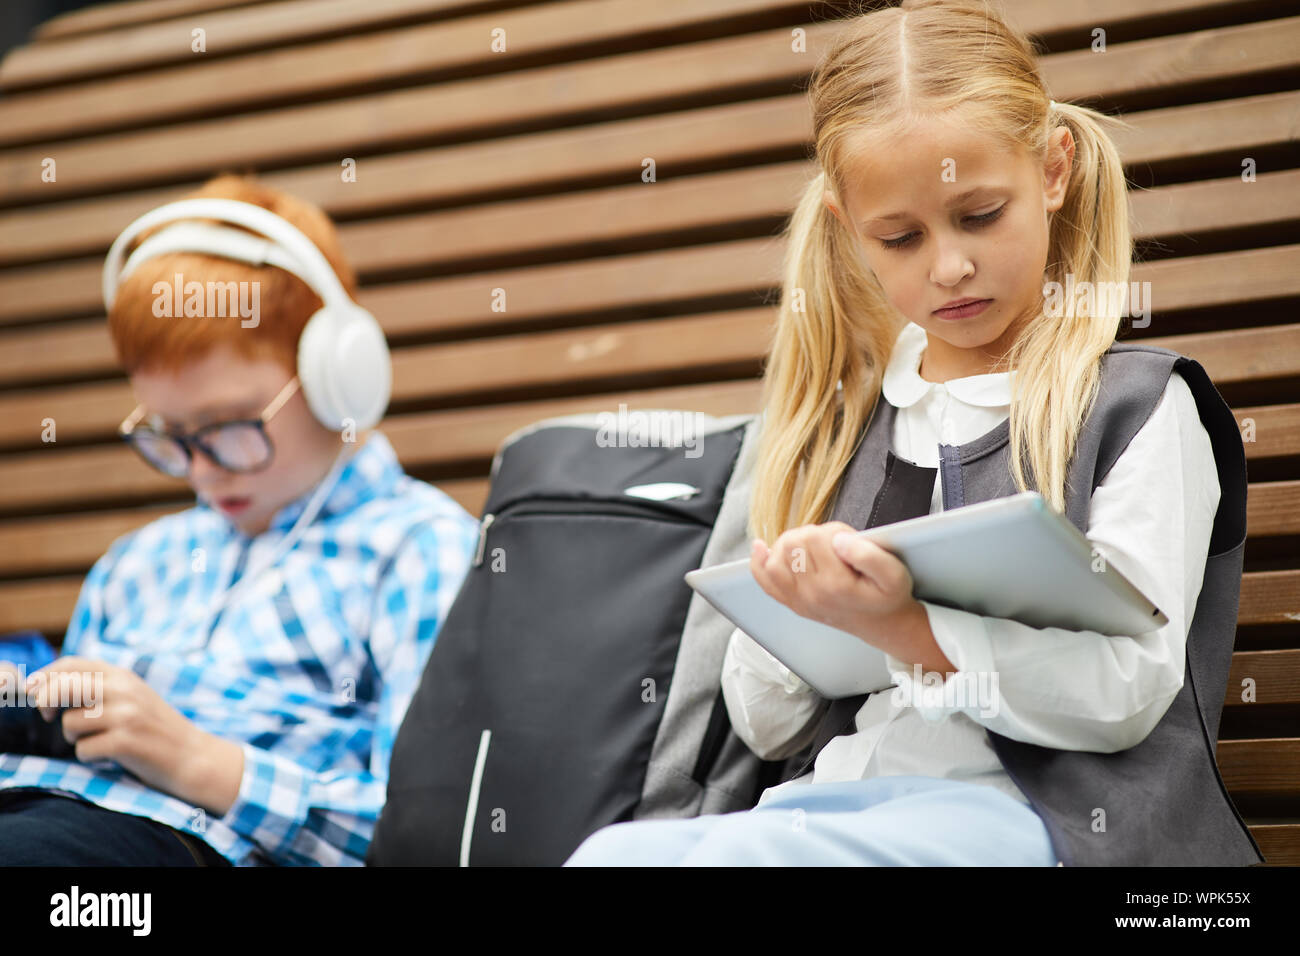 Cute schoolgirl avec de longs cheveux blonds using digital tablet, pour son étude, assise sur le banc d'écolier avec en arrière-plan Banque D'Images